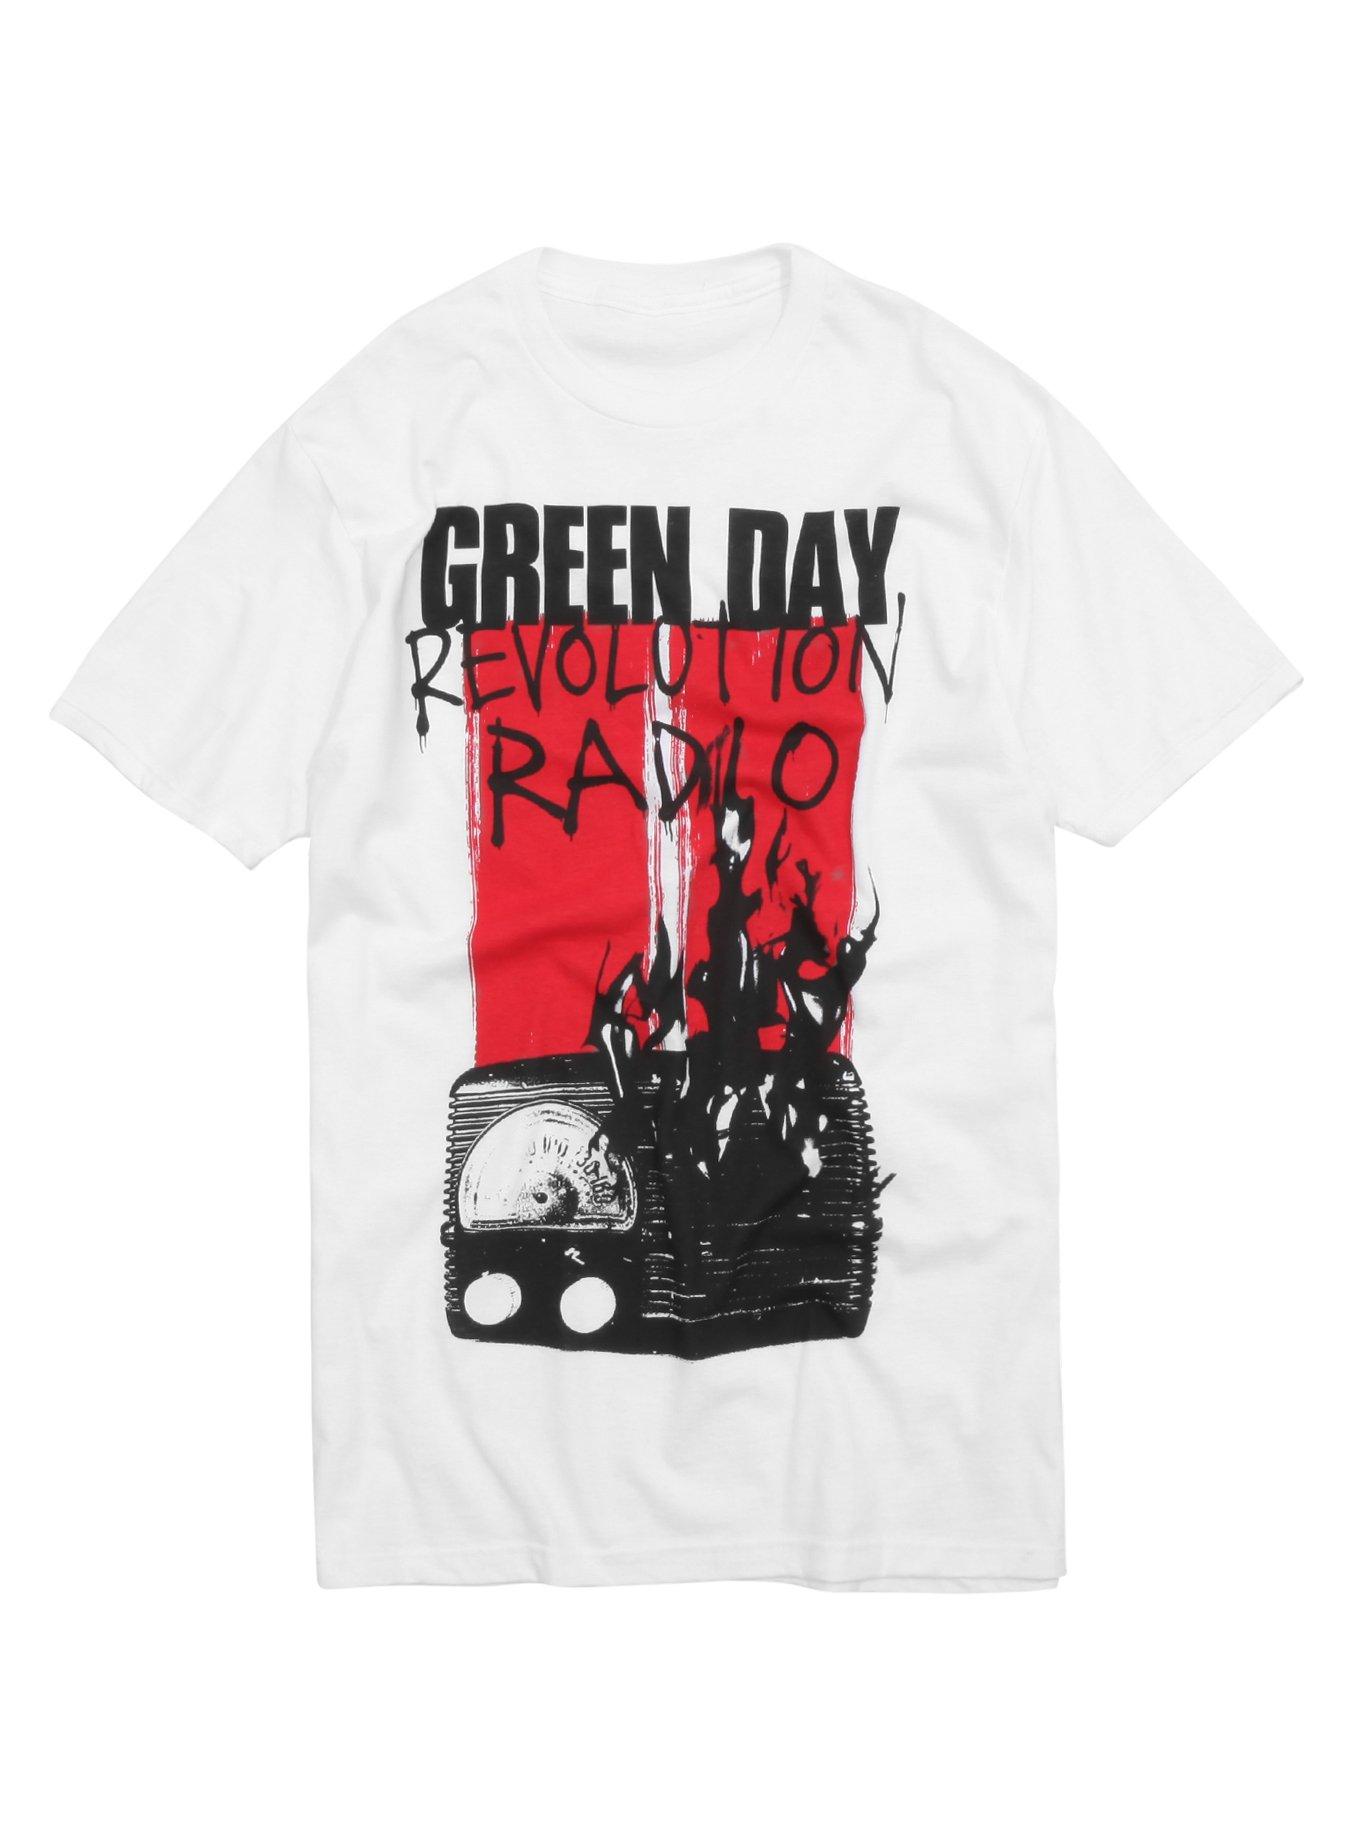 Green Day Revolution Radio White T-Shirt, WHITE, hi-res